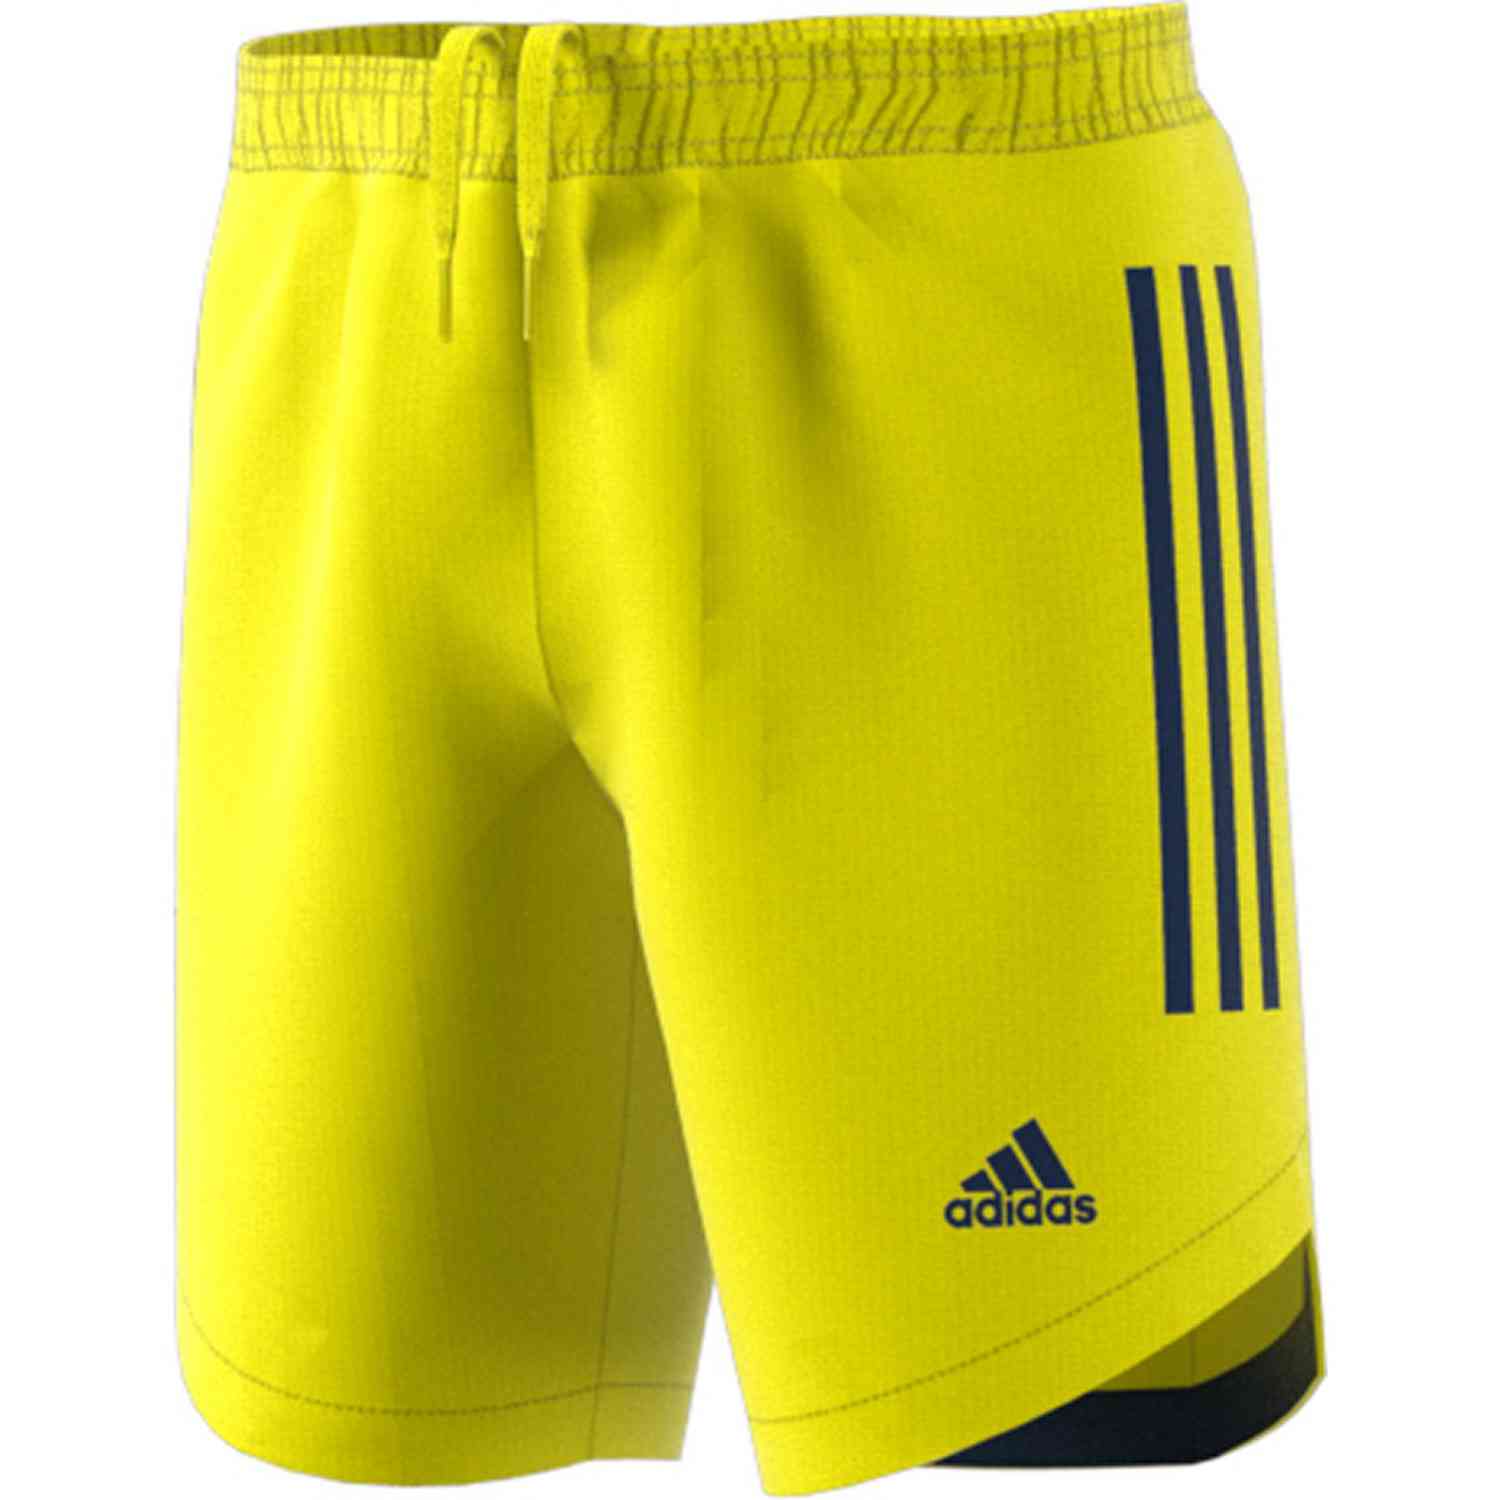 blue and yellow adidas shorts